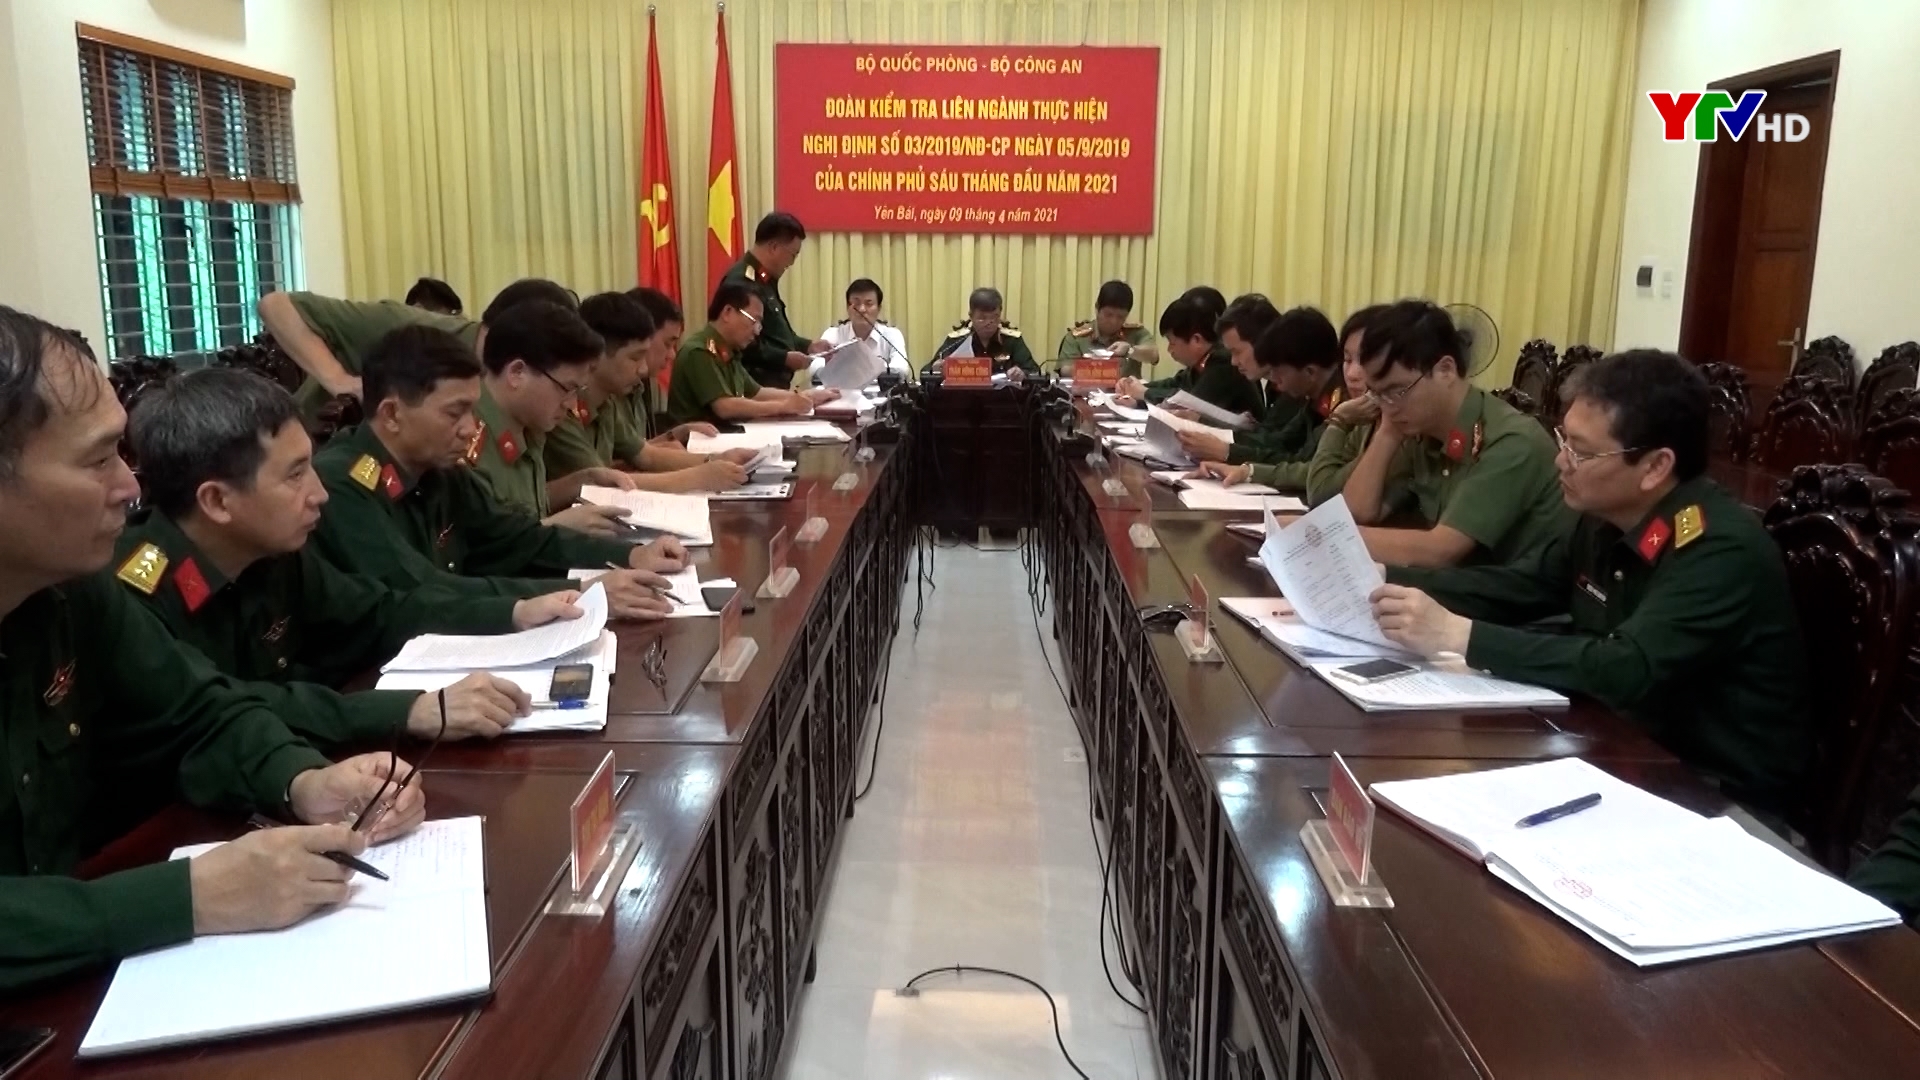 Đoàn kiểm tra liên ngành Bộ Quốc phòng và Bộ Công an làm việc tại tỉnh Yên Bái